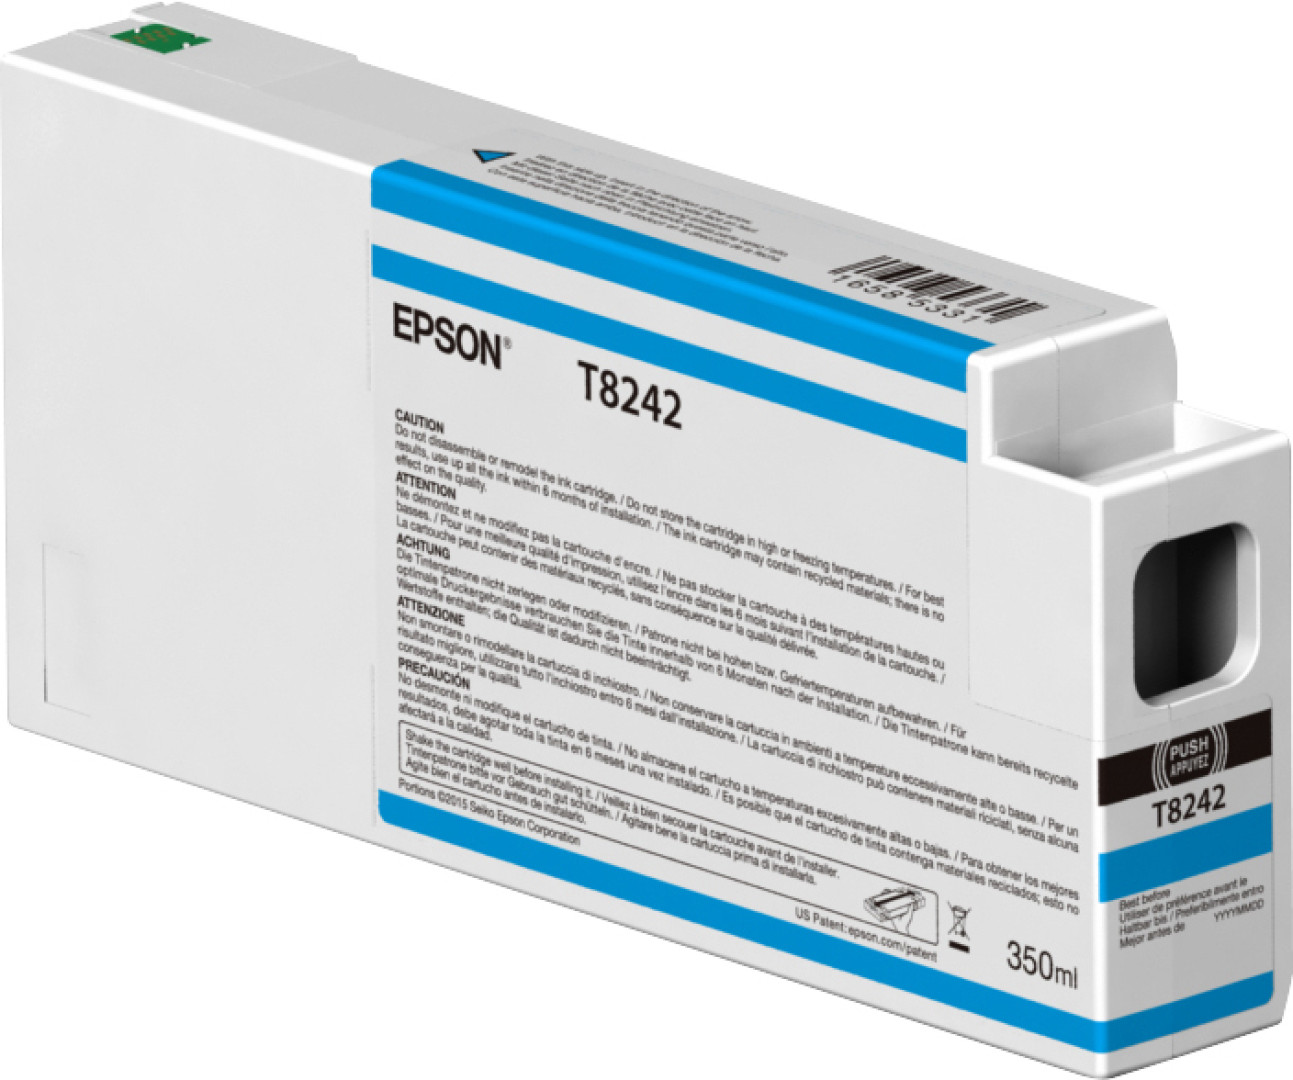 Epson T54X500 cartuccia d'inchiostro 1 pz Originale Ciano chiaro